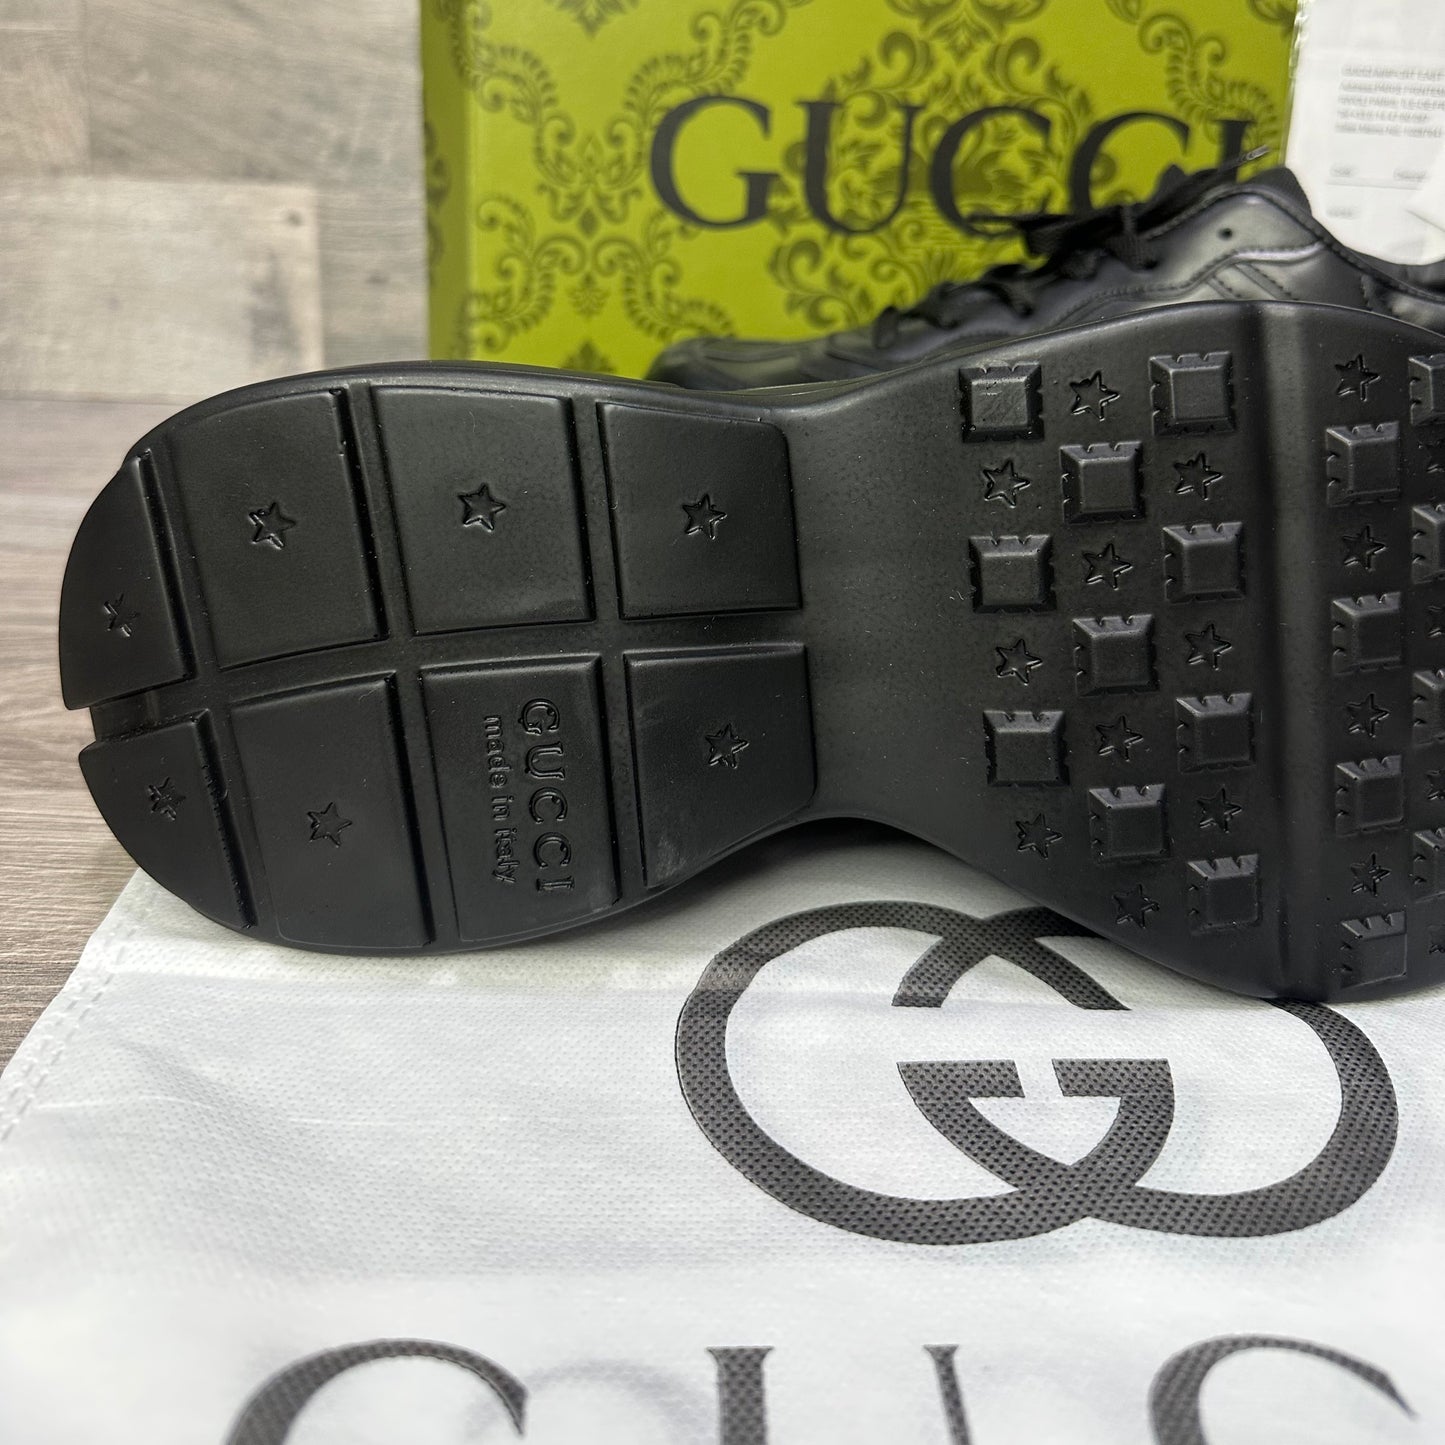 Gucci Code 6 Black